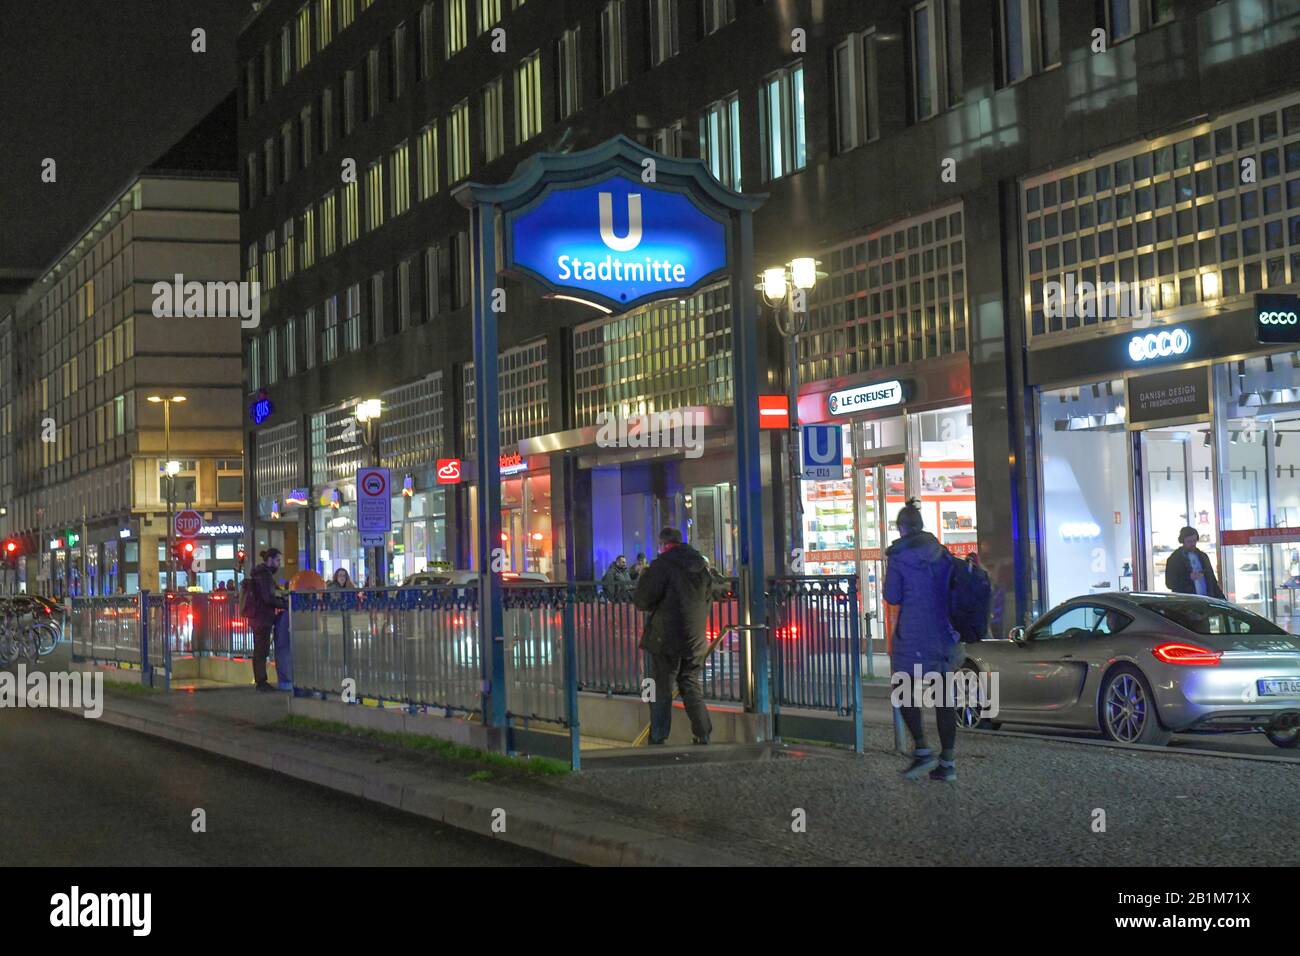 U-Bahnhof-Stadtmitte, Friedrichstraße, Mitte, Berlin, Deutschland Stockfoto